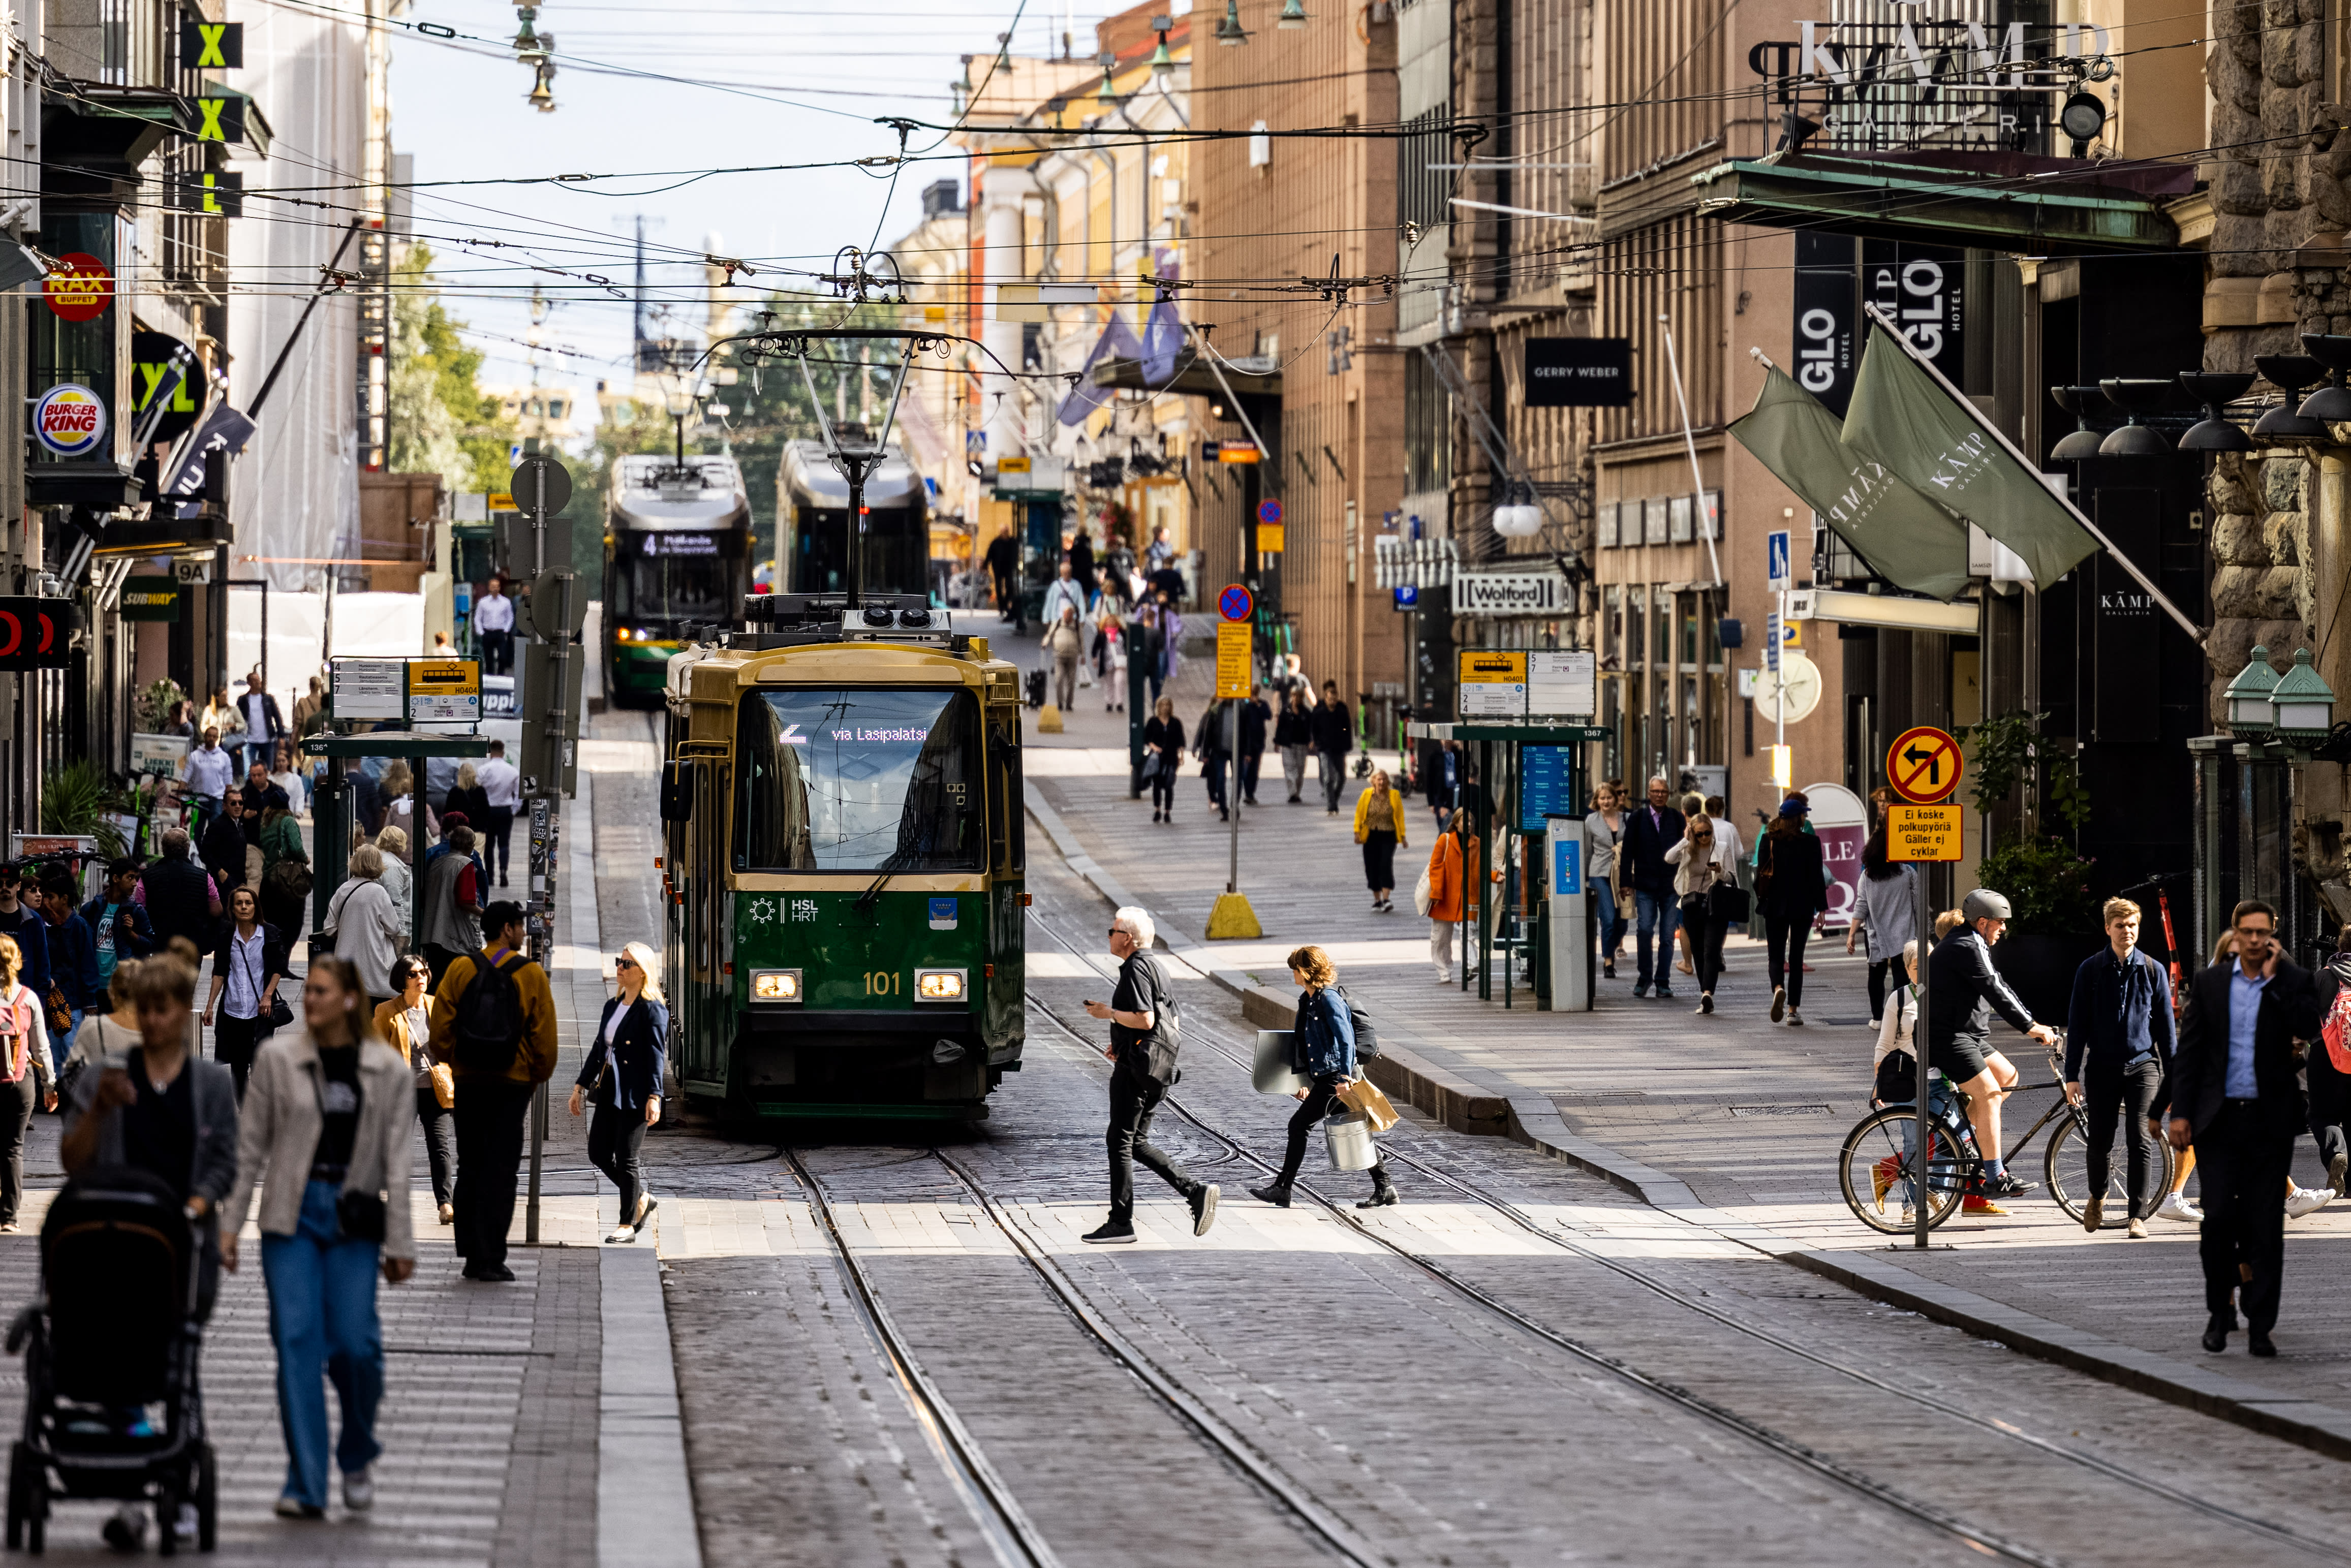 Forscher: Finnland hinkt seinen Konkurrenten hinterher, wenn es darum geht, qualifizierte ausländische Arbeitskräfte anzuziehen